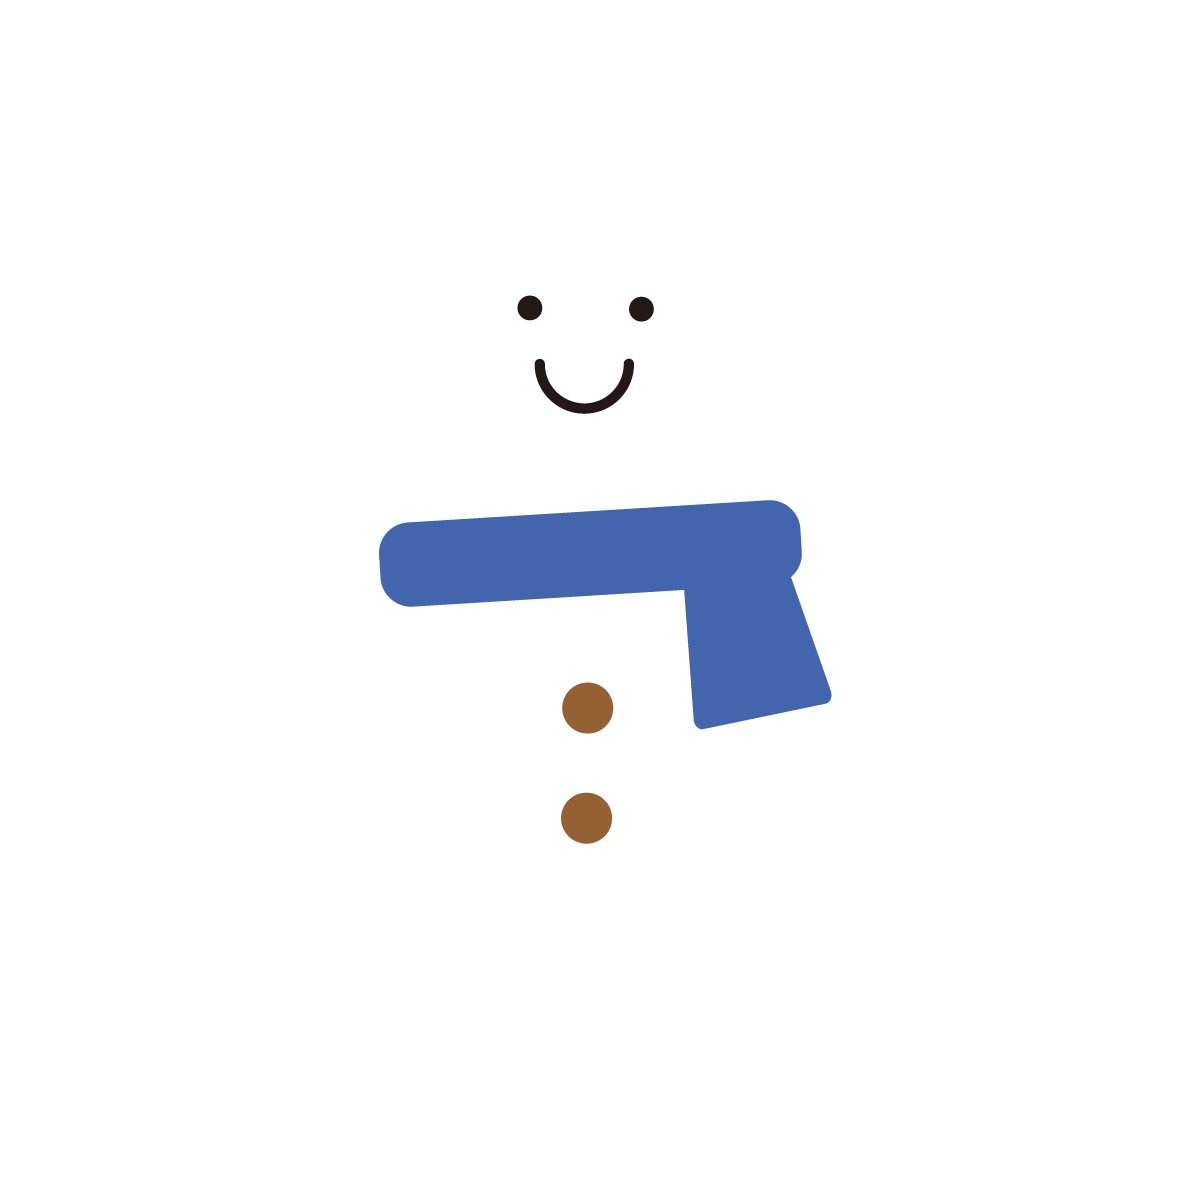 冬のイメージにぴったり、にっこりとした笑顔が可愛らしい雪だるまです。